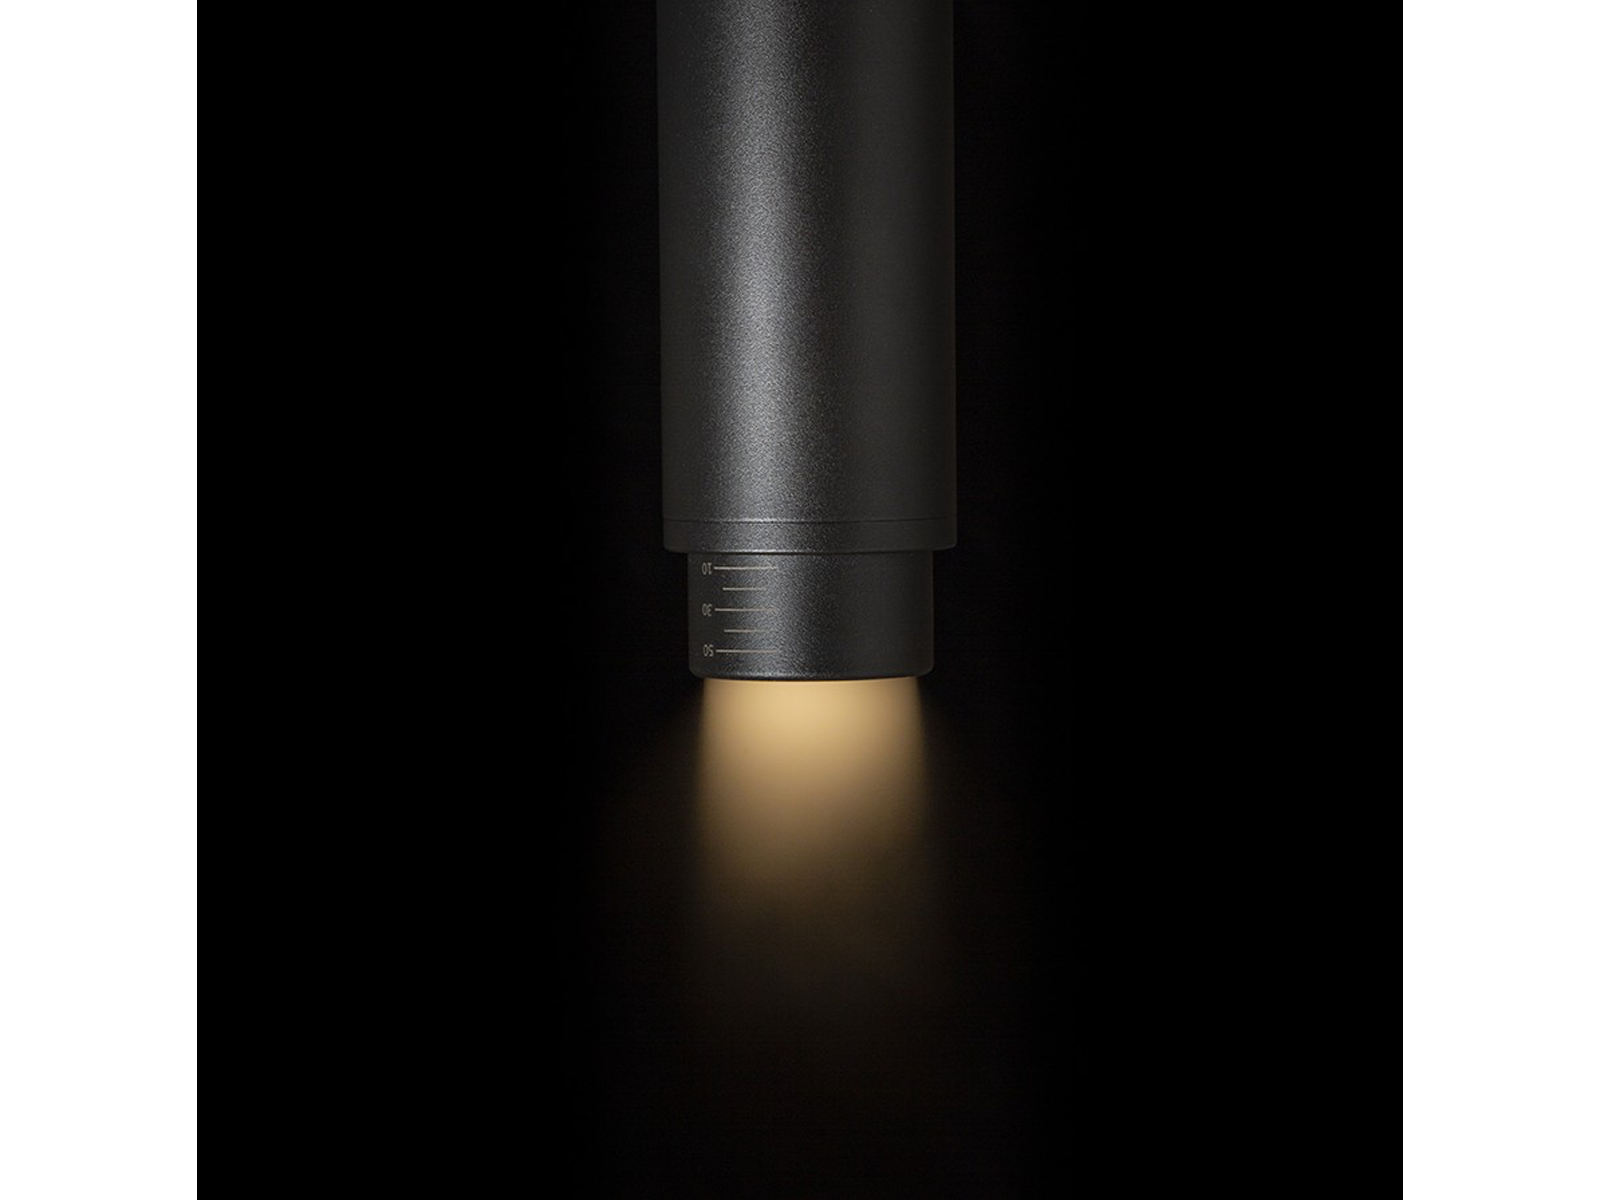 Stropní svítidlo OPTIMUS pro tříokruhovou lištu, černé, 230V, GU10, 10-50°, 19cm